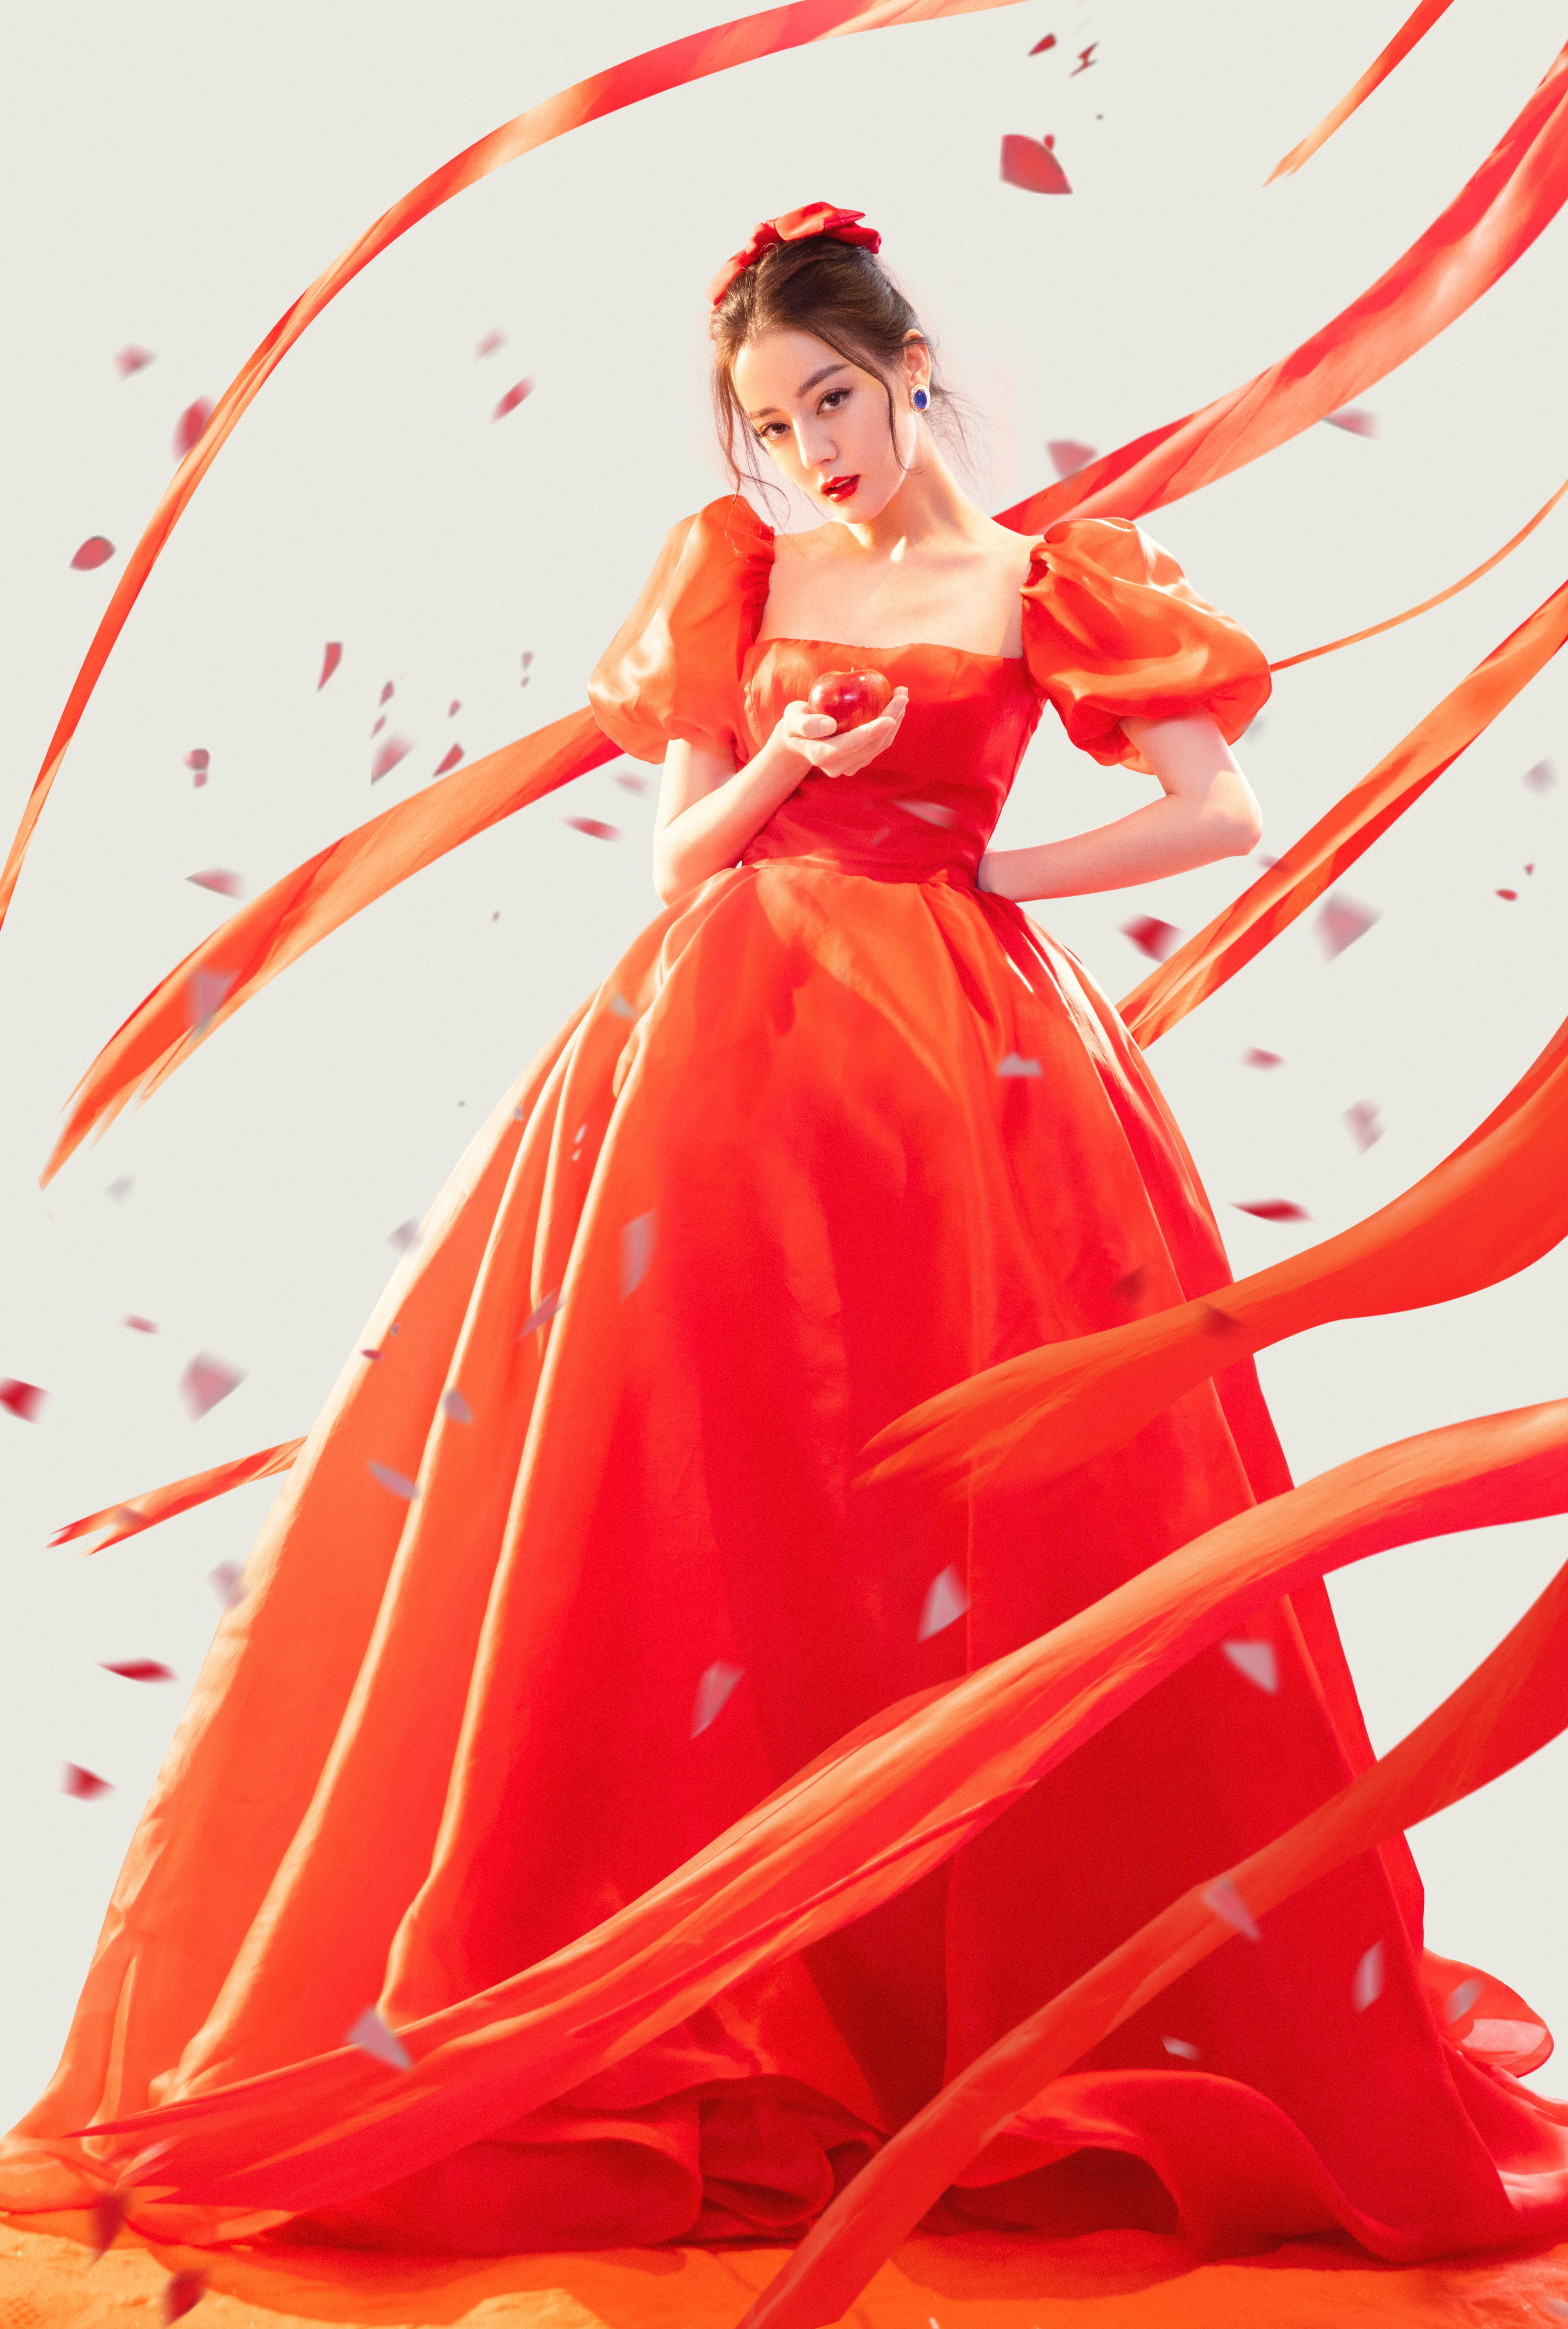 迪丽热巴穿红色长裙勾勒完美身材 泡泡袖配蝴蝶结美艳动人,